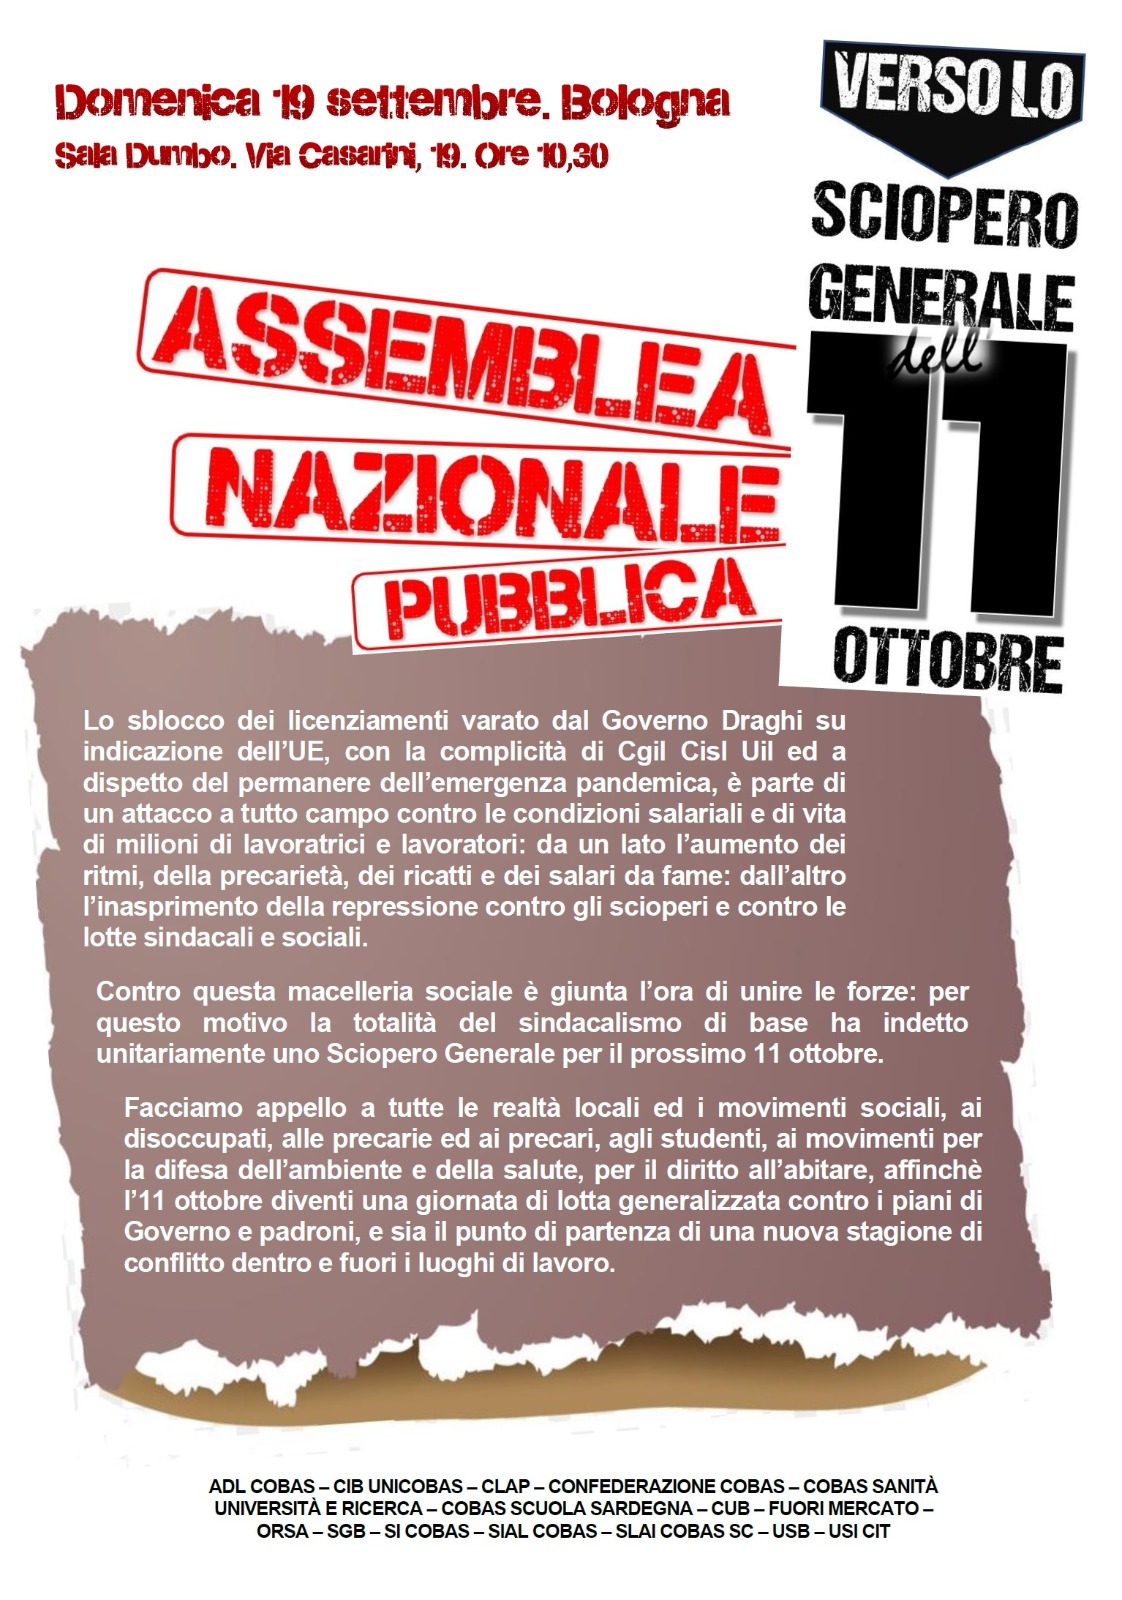 Bologna. Domenica 19 settembre Assemblea Nazionale verso lo sciopero generale dell'11 ottobre